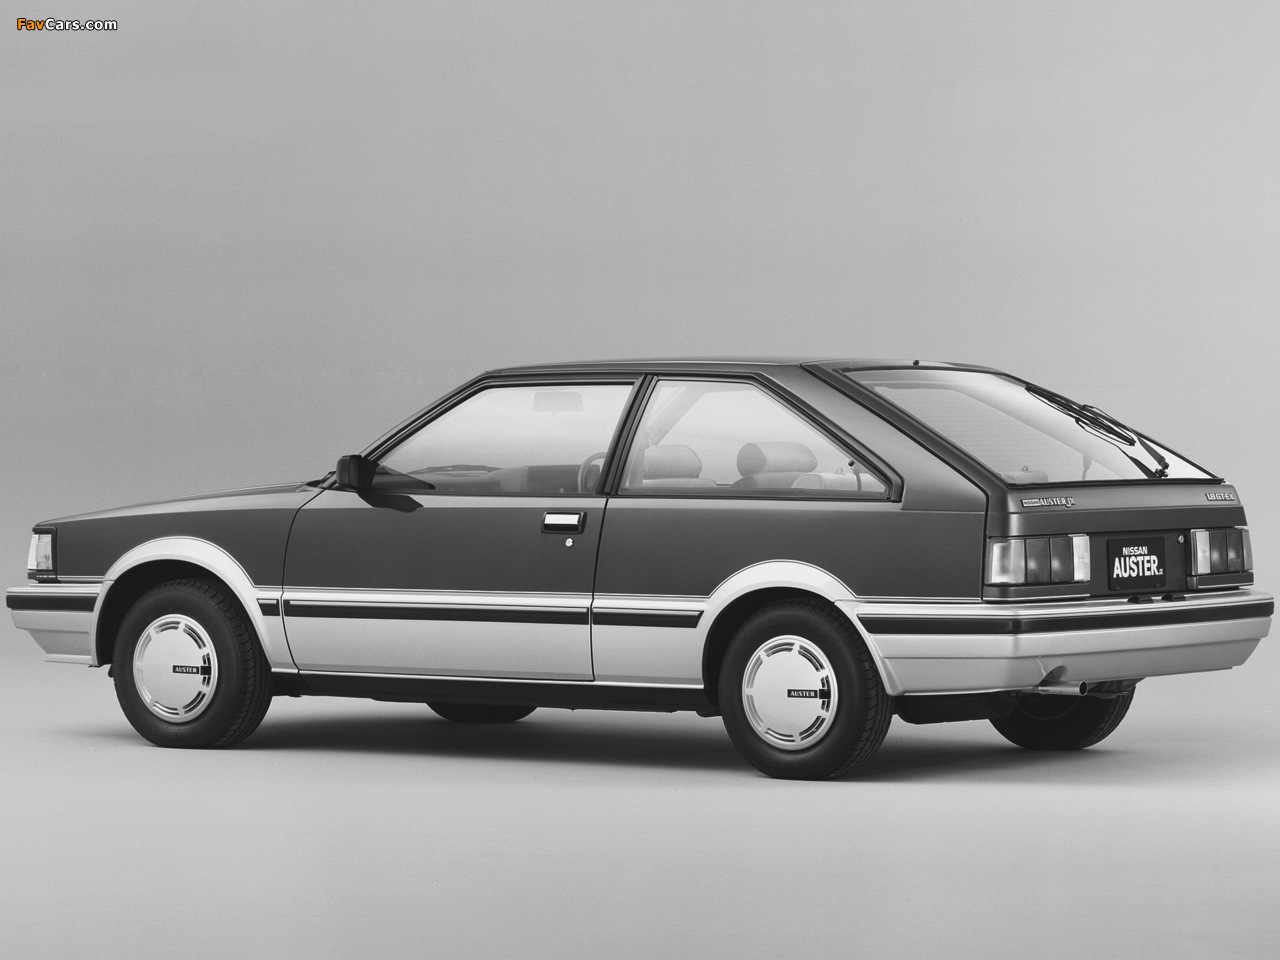 Nissan Auster JX Hatchback 1800 GT-EX (T11) 1983–85 images (1280 x 960)